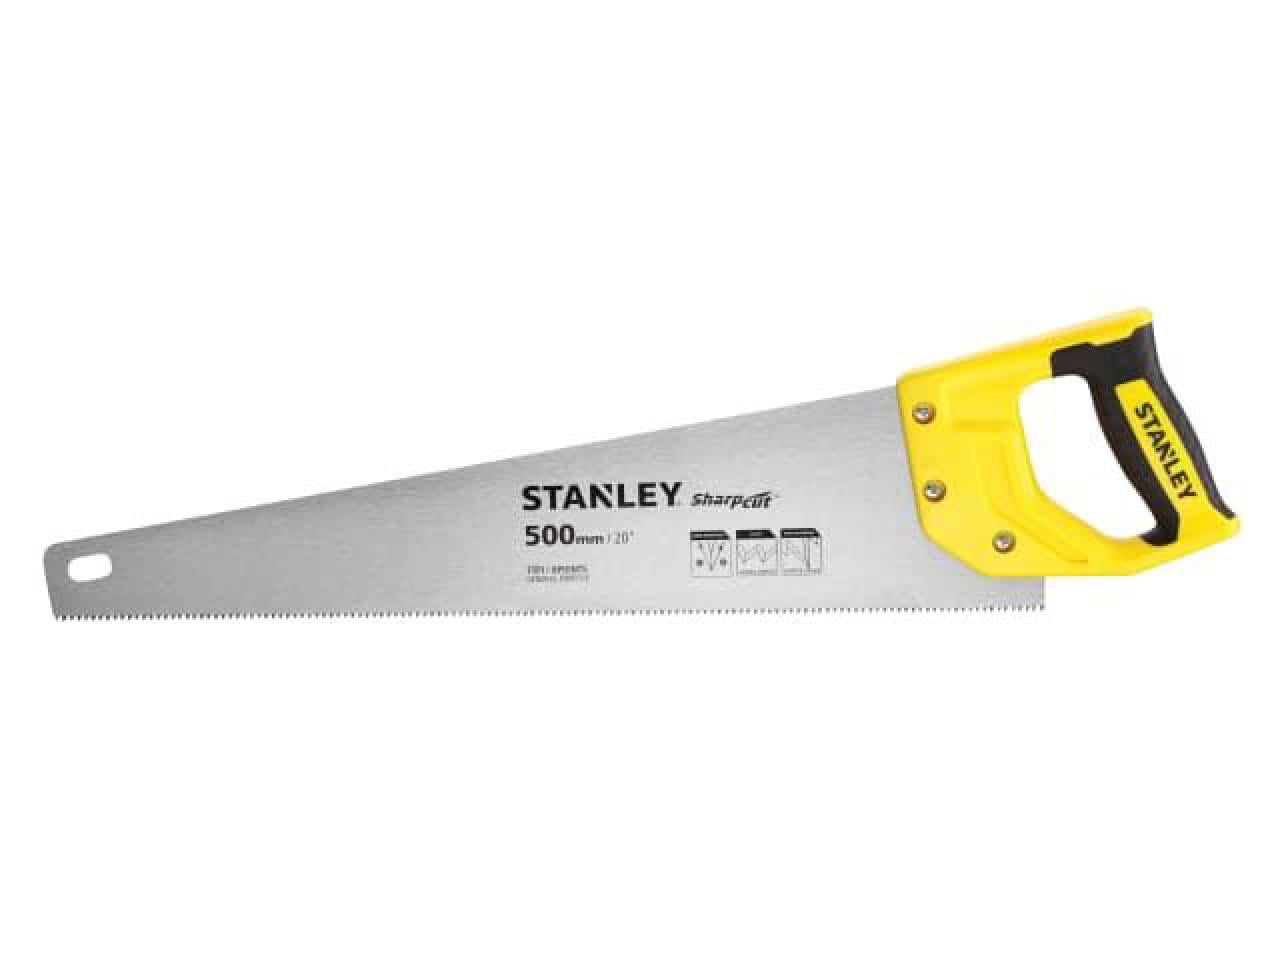 STANLEY - Sharpcut™ Handsaw 500mm (20in) 7 TPI | Fuchsschwanz